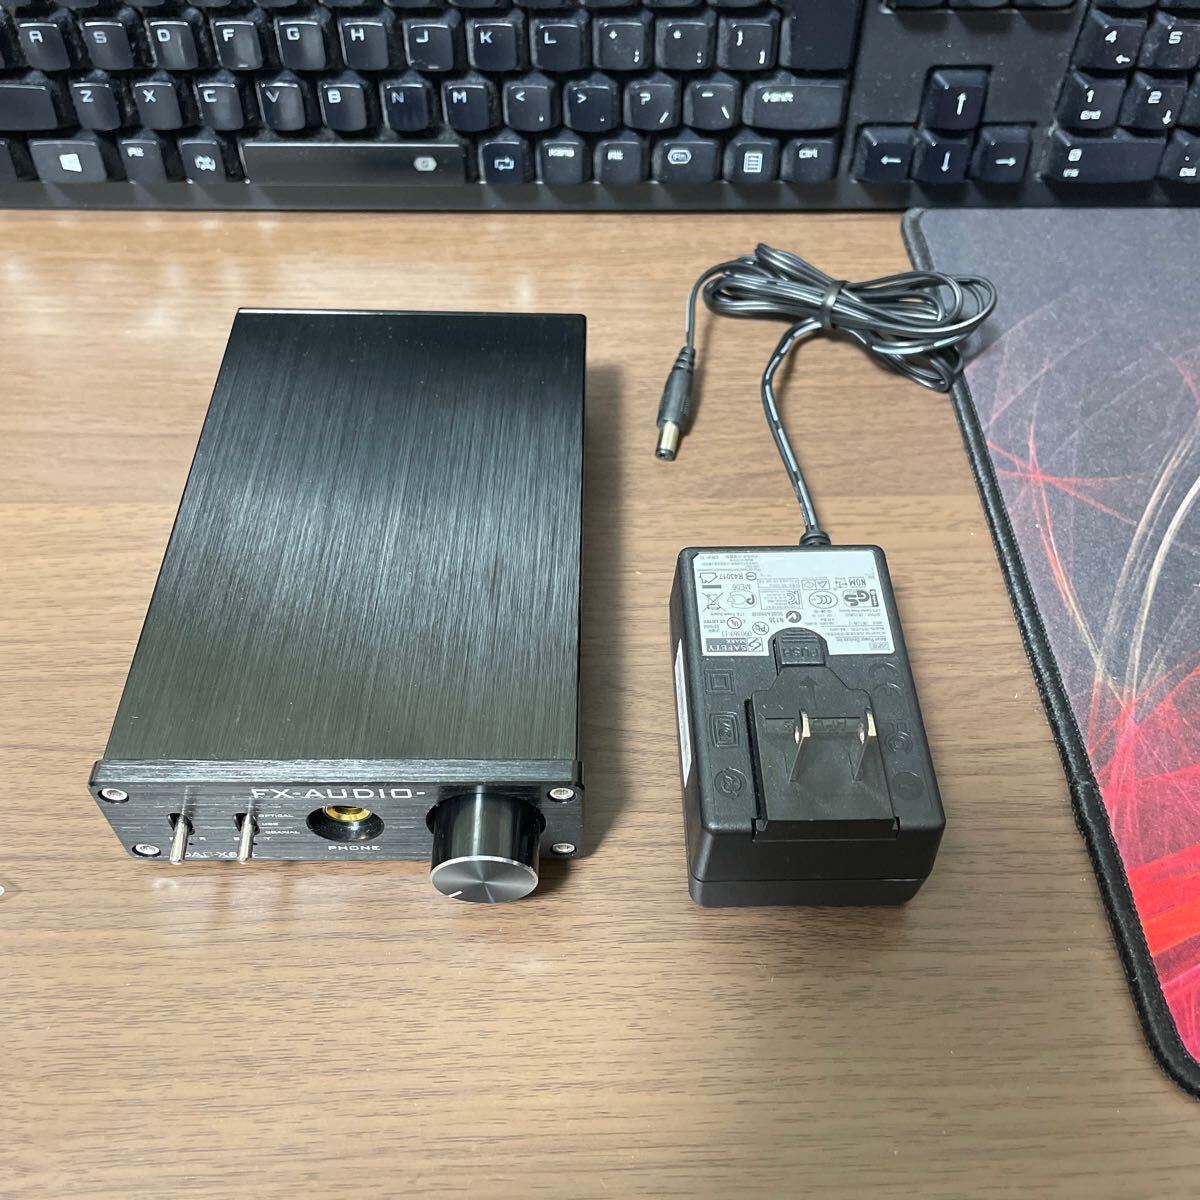 FX-AUDIO- DAC-X6J+ 24bit 192kHz USB DAC DA converter headphone amplifier operation verification ending AC adaptor attached 